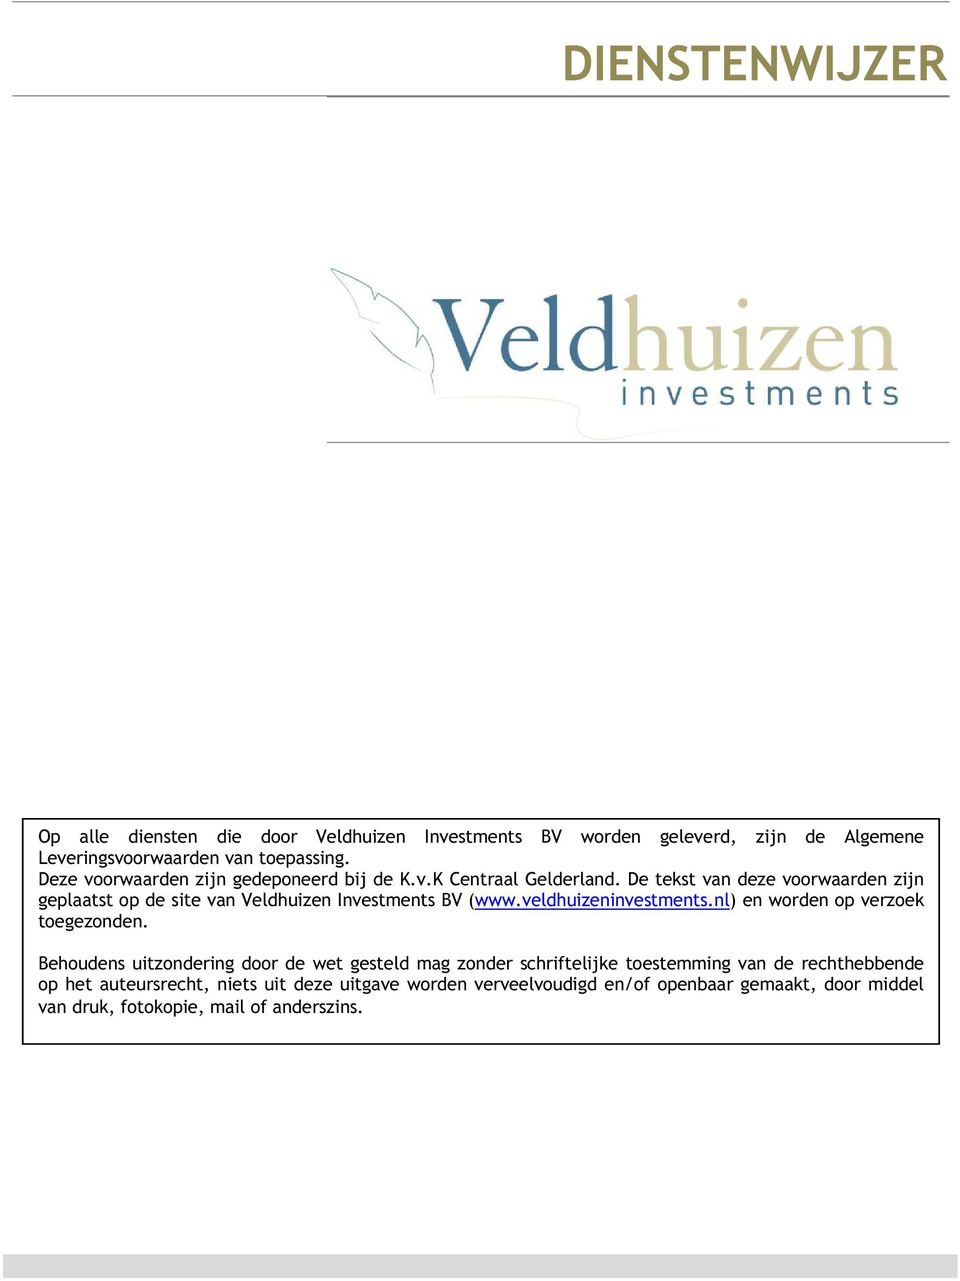 De tekst van deze vrwaarden zijn geplaatst p de site van Veldhuizen Investments BV (www.veldhuizeninvestments.nl) en wrden p verzek tegeznden.